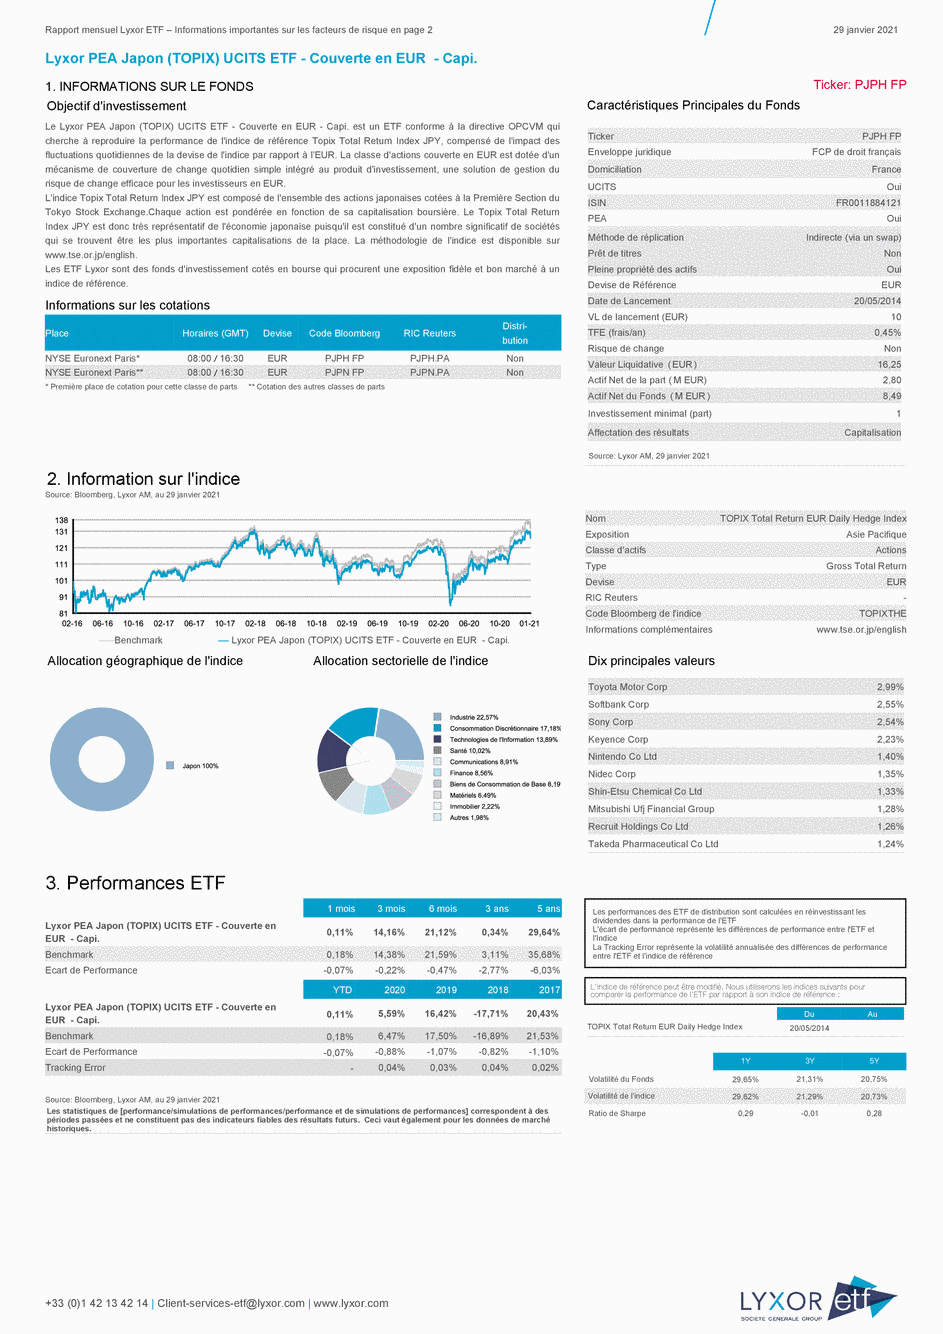 Reporting Lyxor PEA Japon (TOPIX) UCITS ETF - Couverte en EUR  - Capi. - 29/01/2021 - Français